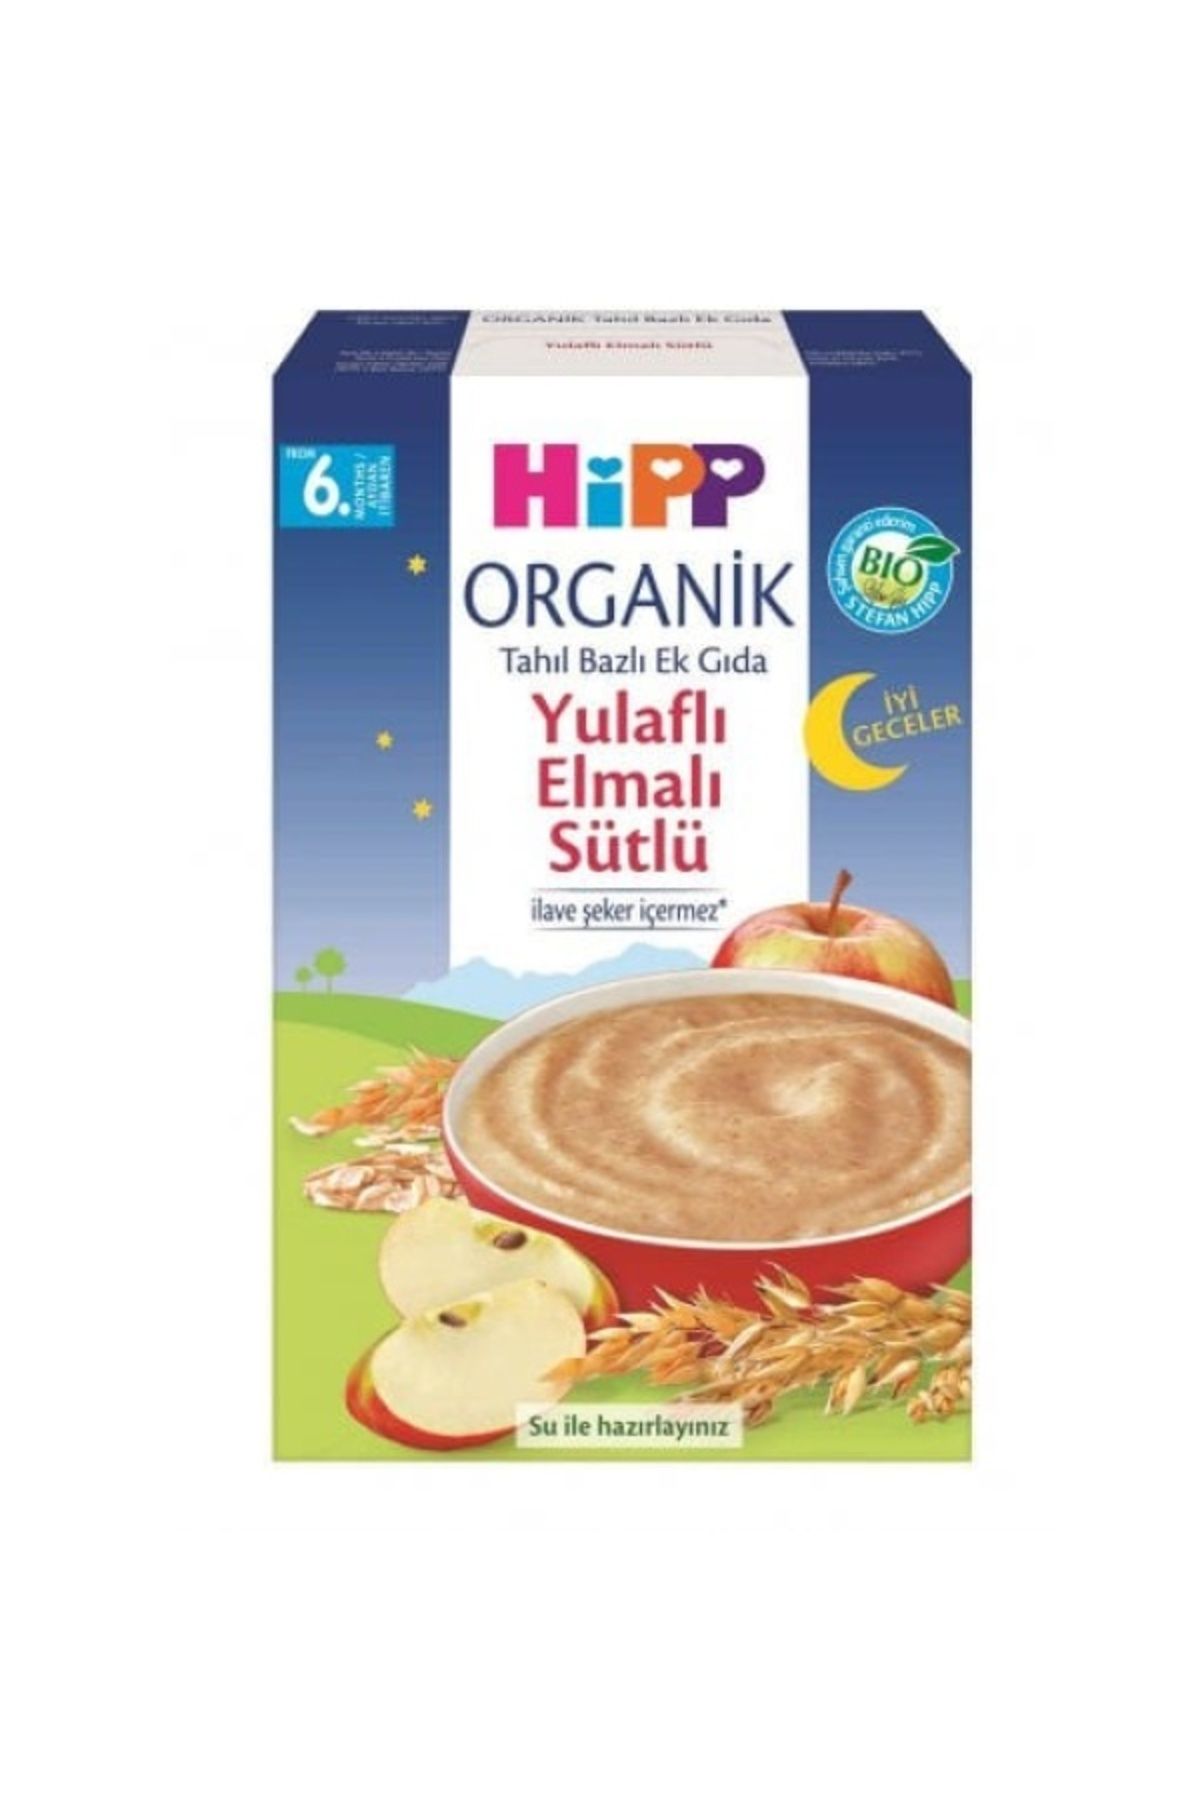 Hipp Organik Iyi Geceler Sütlü Yulaflı Elmalı Tahıl Bazlı Ek Gıda 250gr